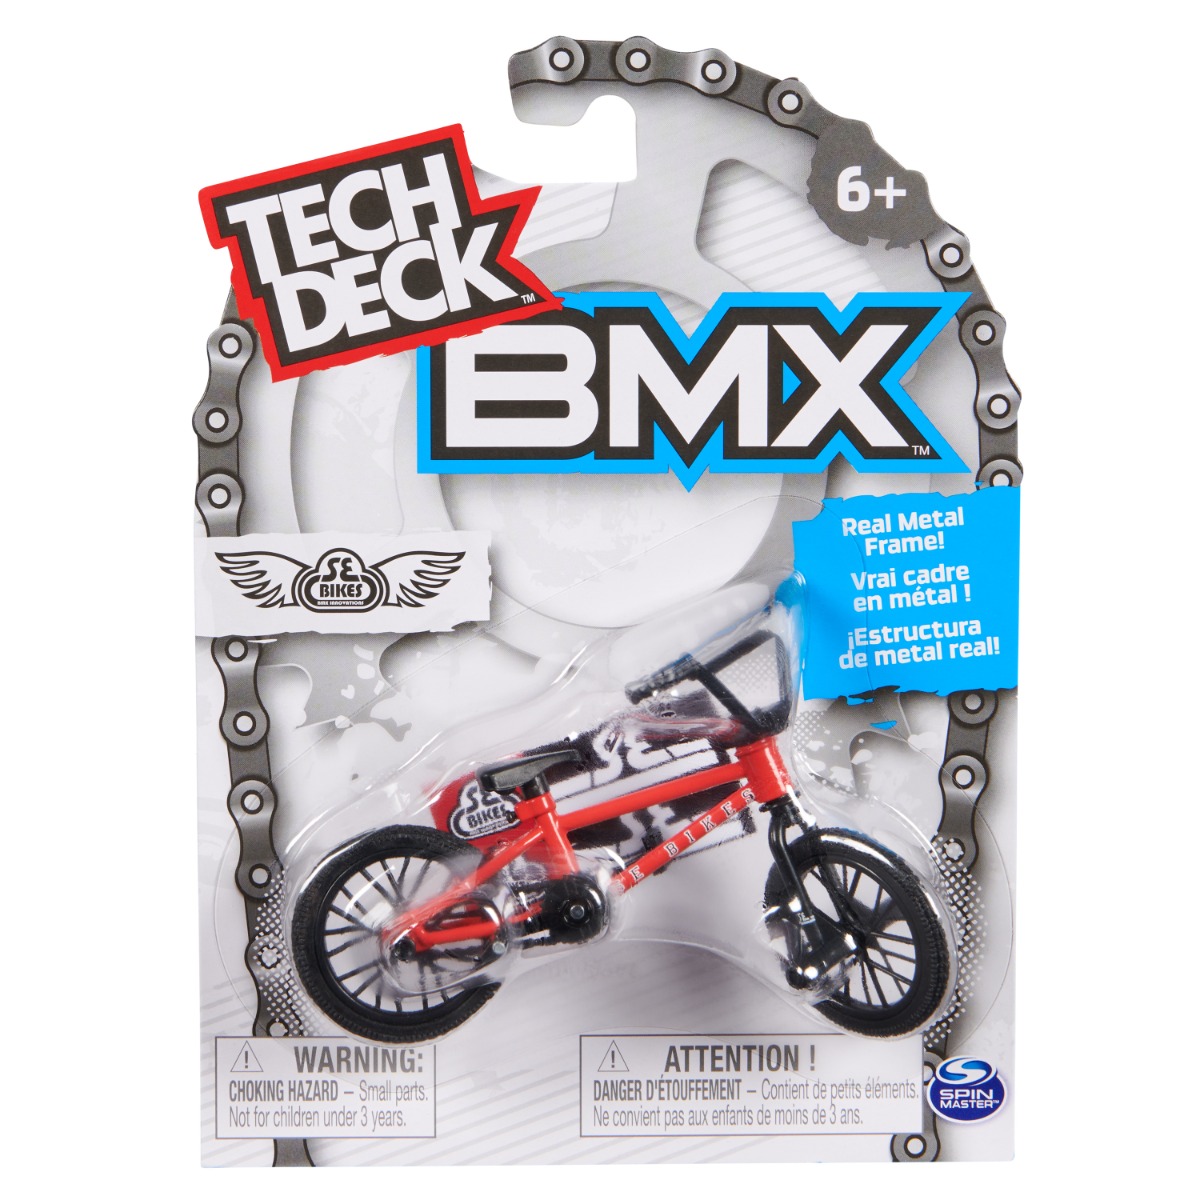 Mini BMX bike, Tech Deck, BMX SE Bikes, 20145905